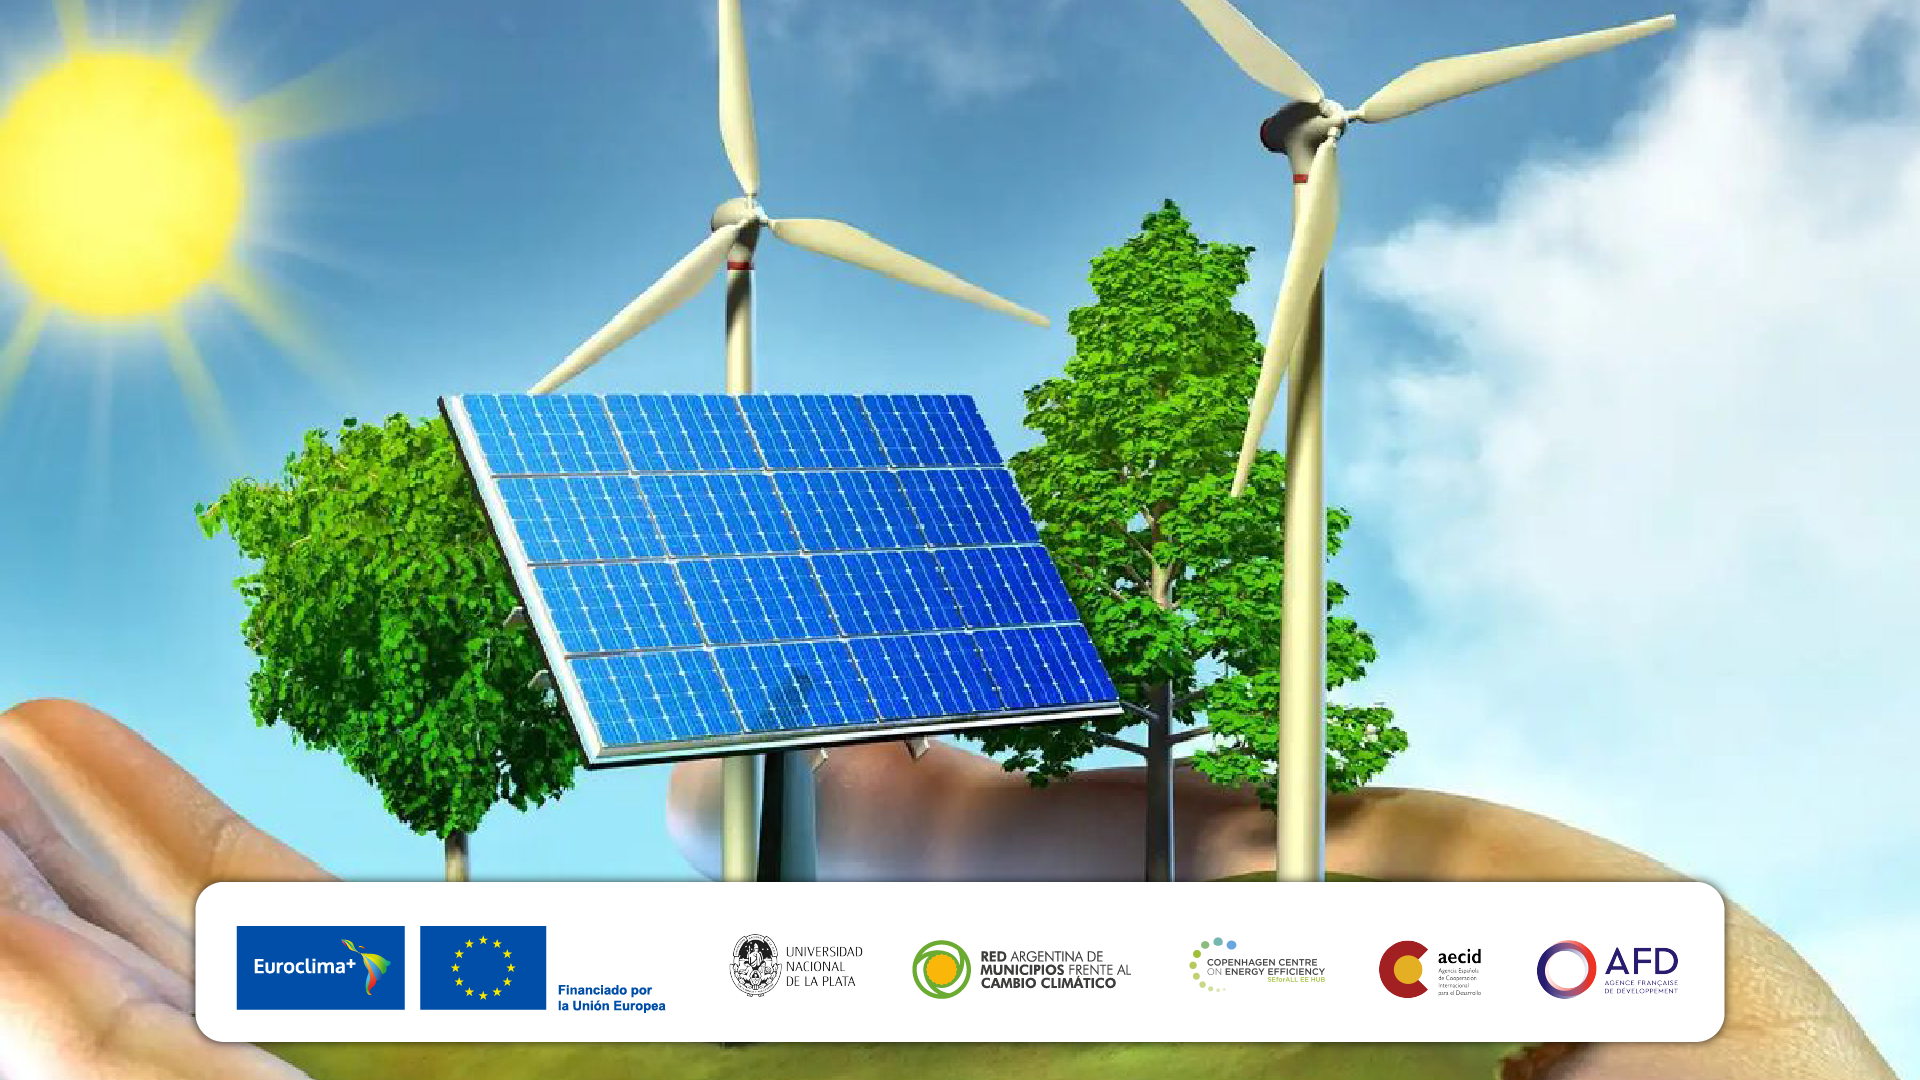 Producto 1: Capacitaciones virtuales y presenciales para uso adecuado de herramientas eficientes energéticamente en gobiernos locales